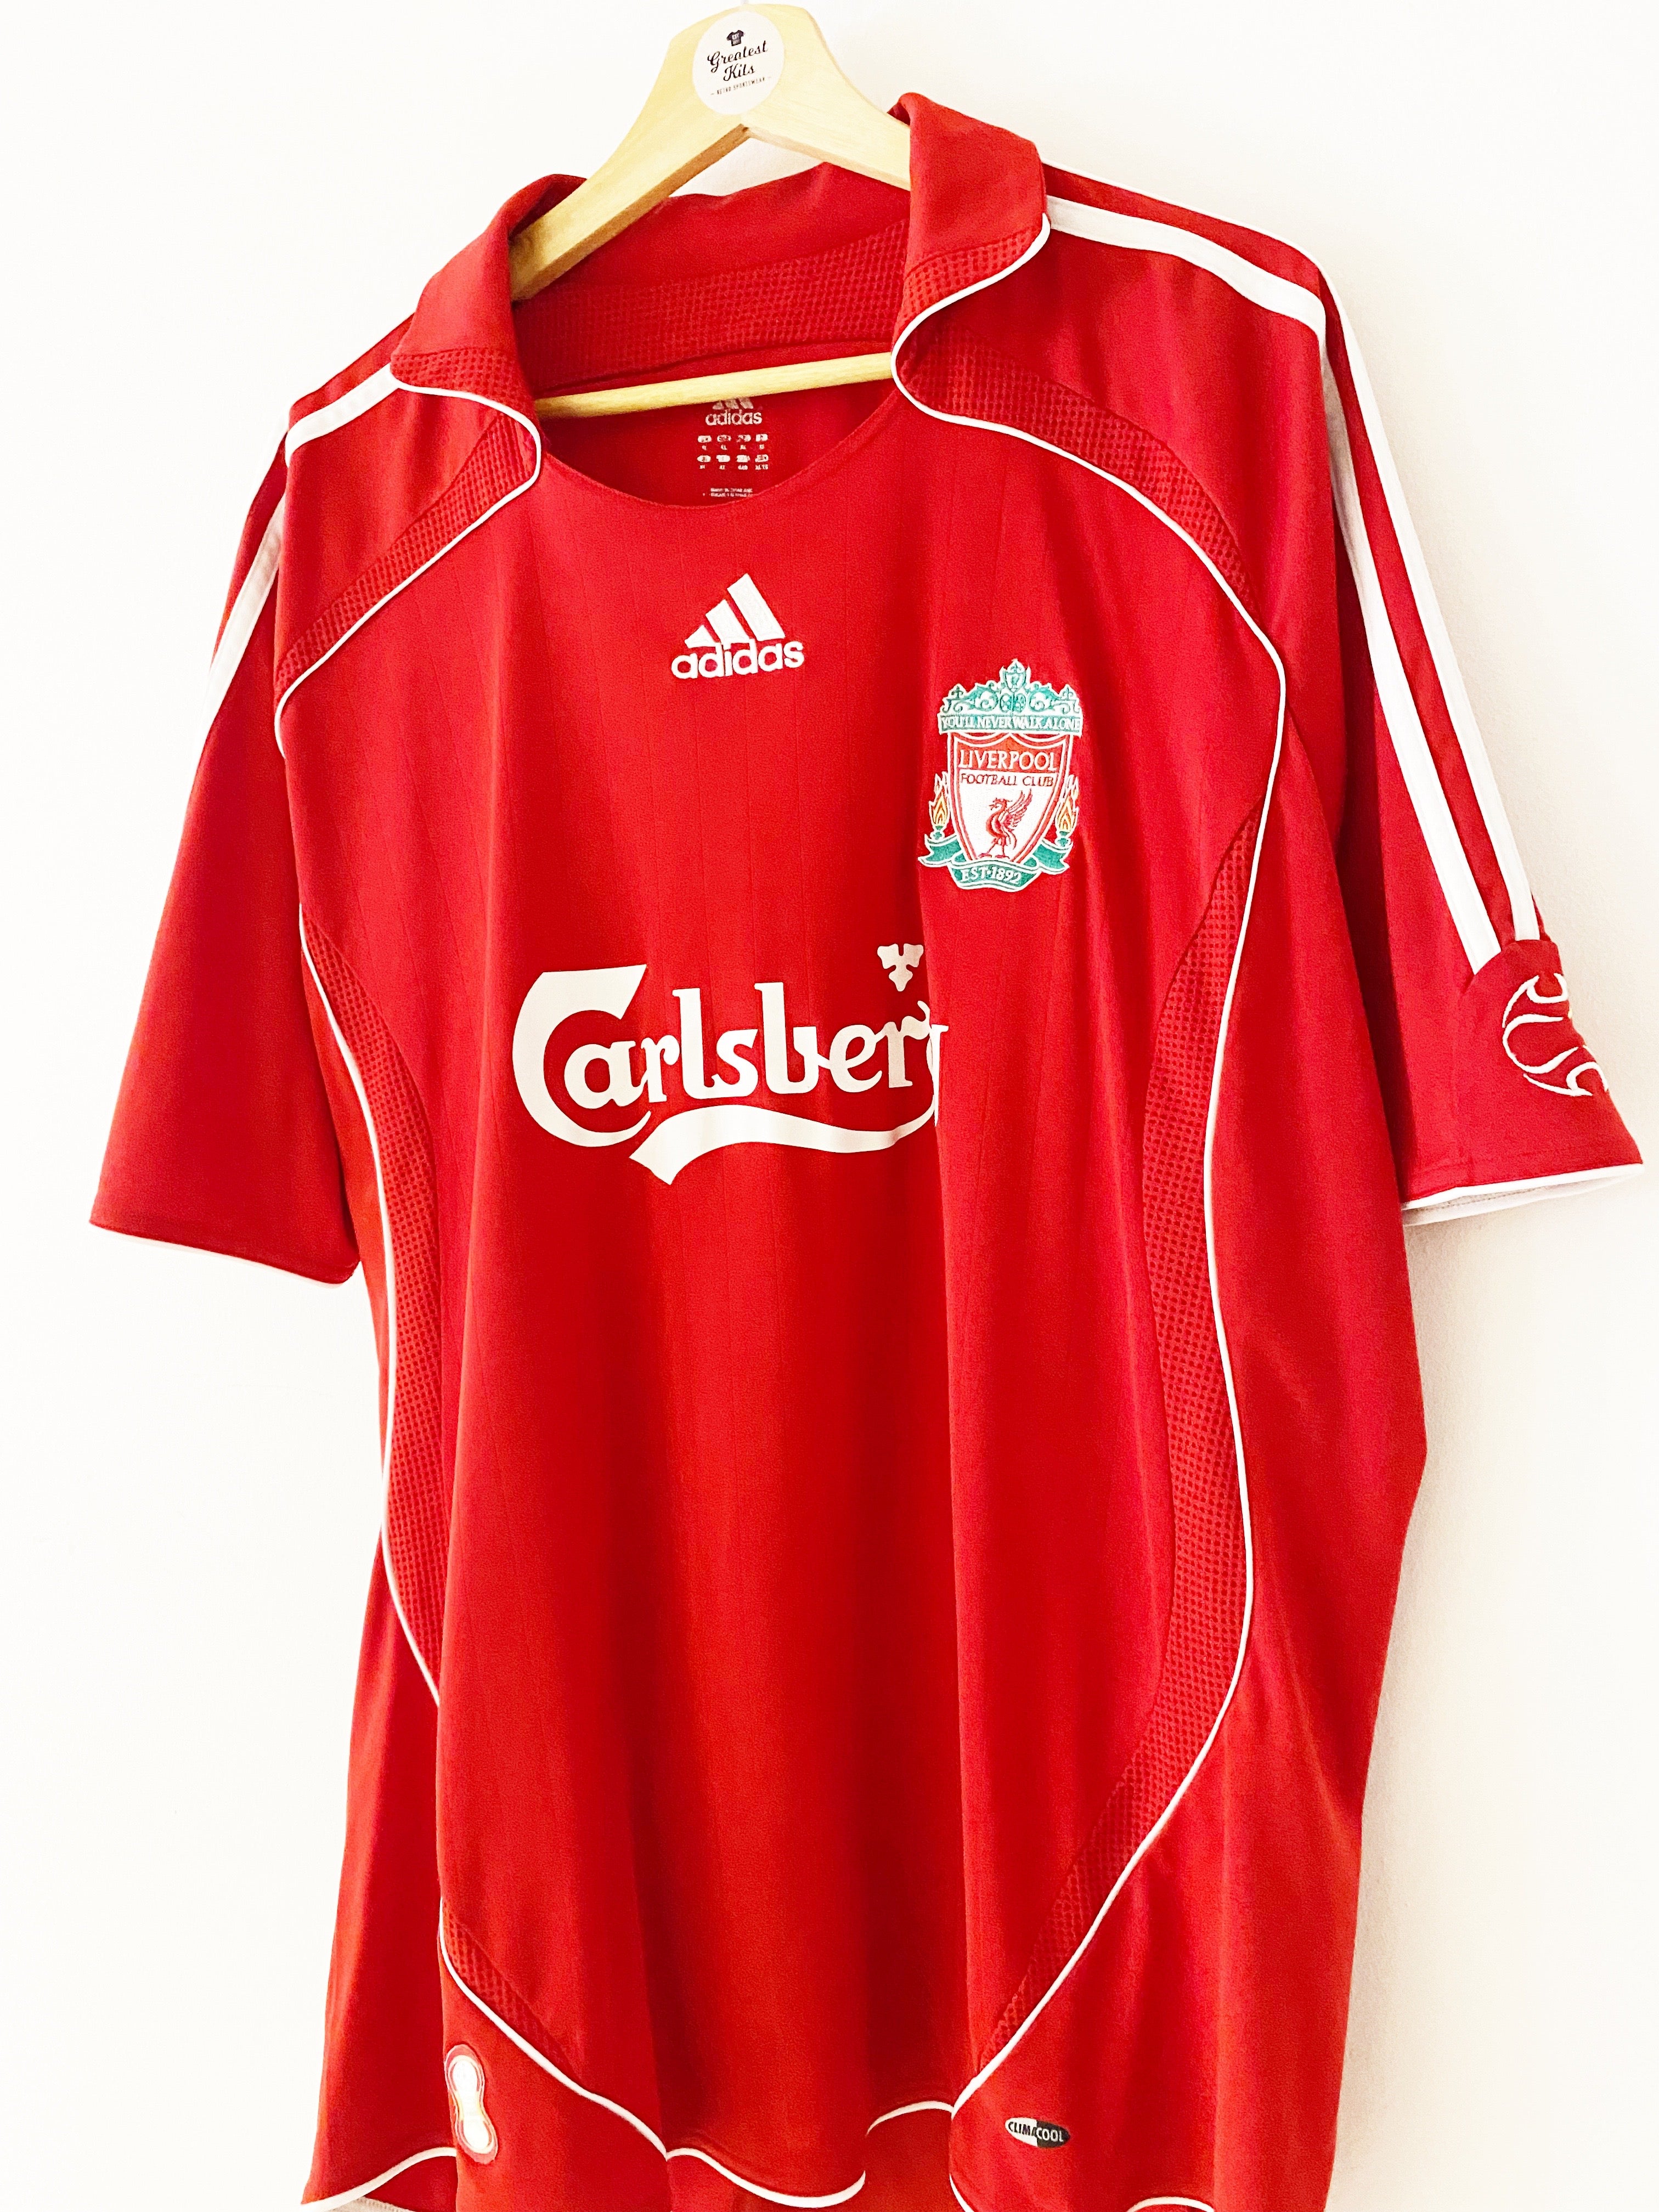 2006/08 Liverpool Home Shirt Carragher #23 (XL) 8/10